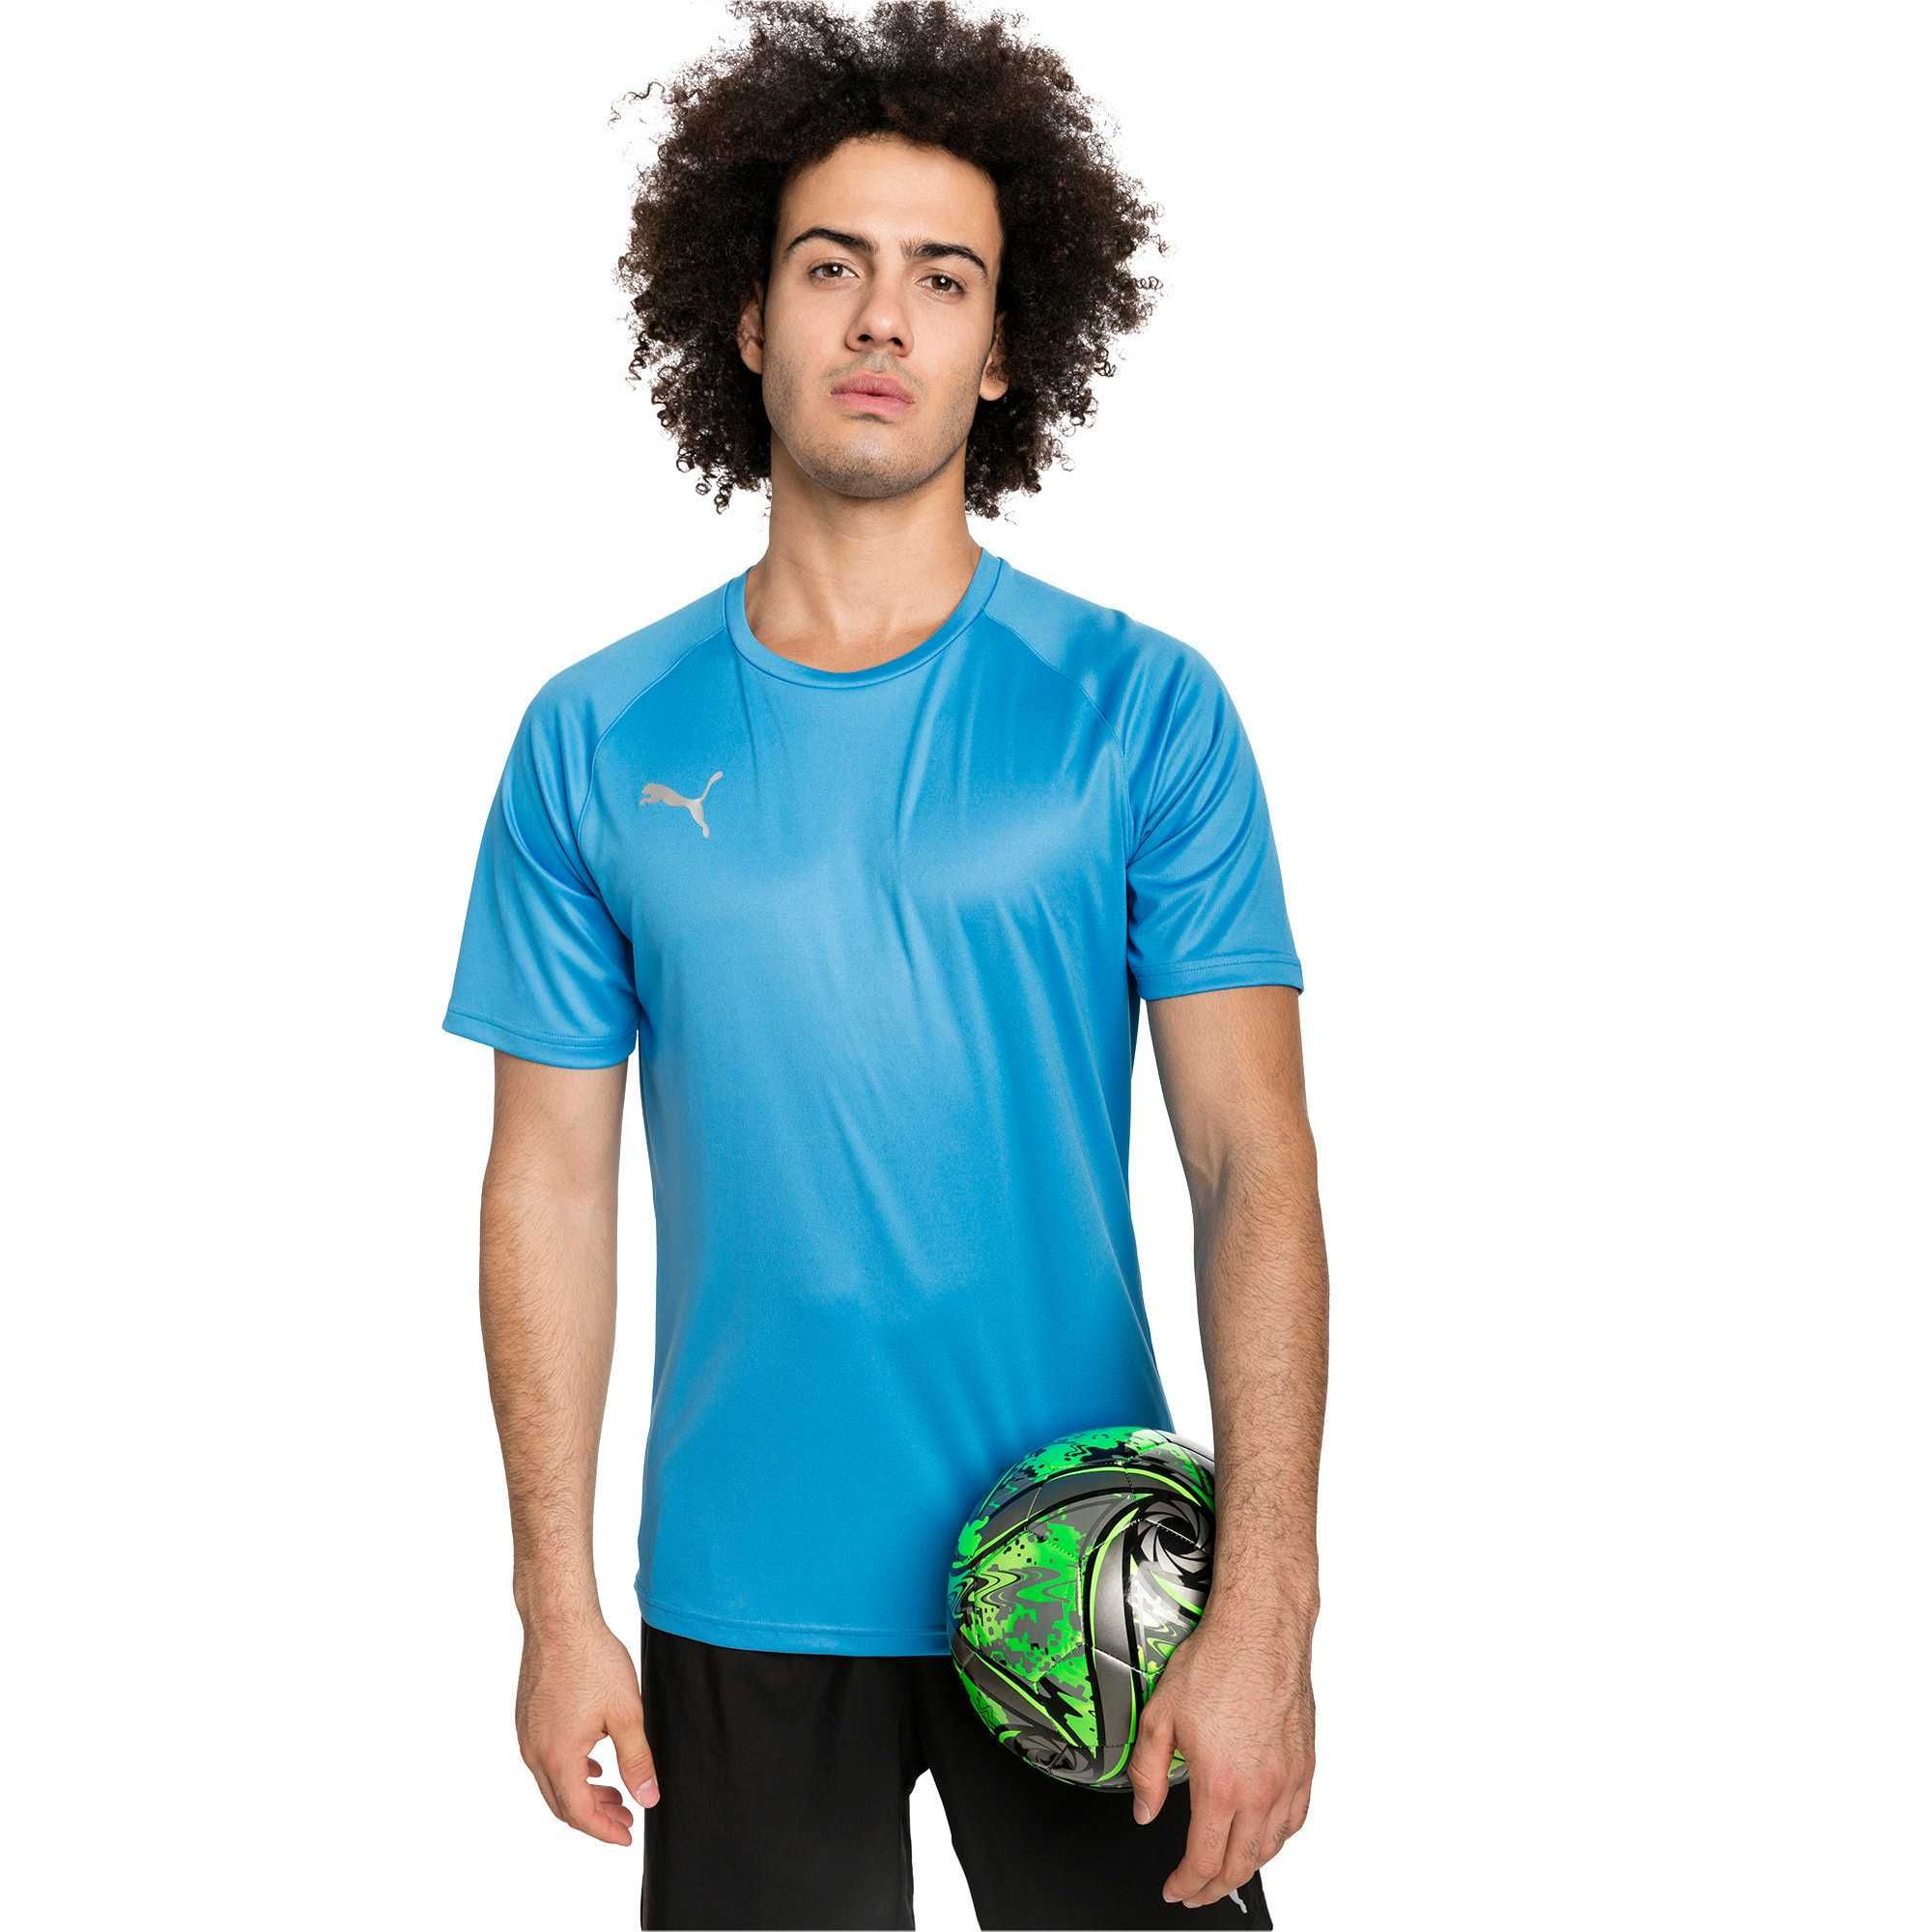 Koszulka piłkarska T-shirt PUMA ftblNXT Evostripe Football Tee * NOWA